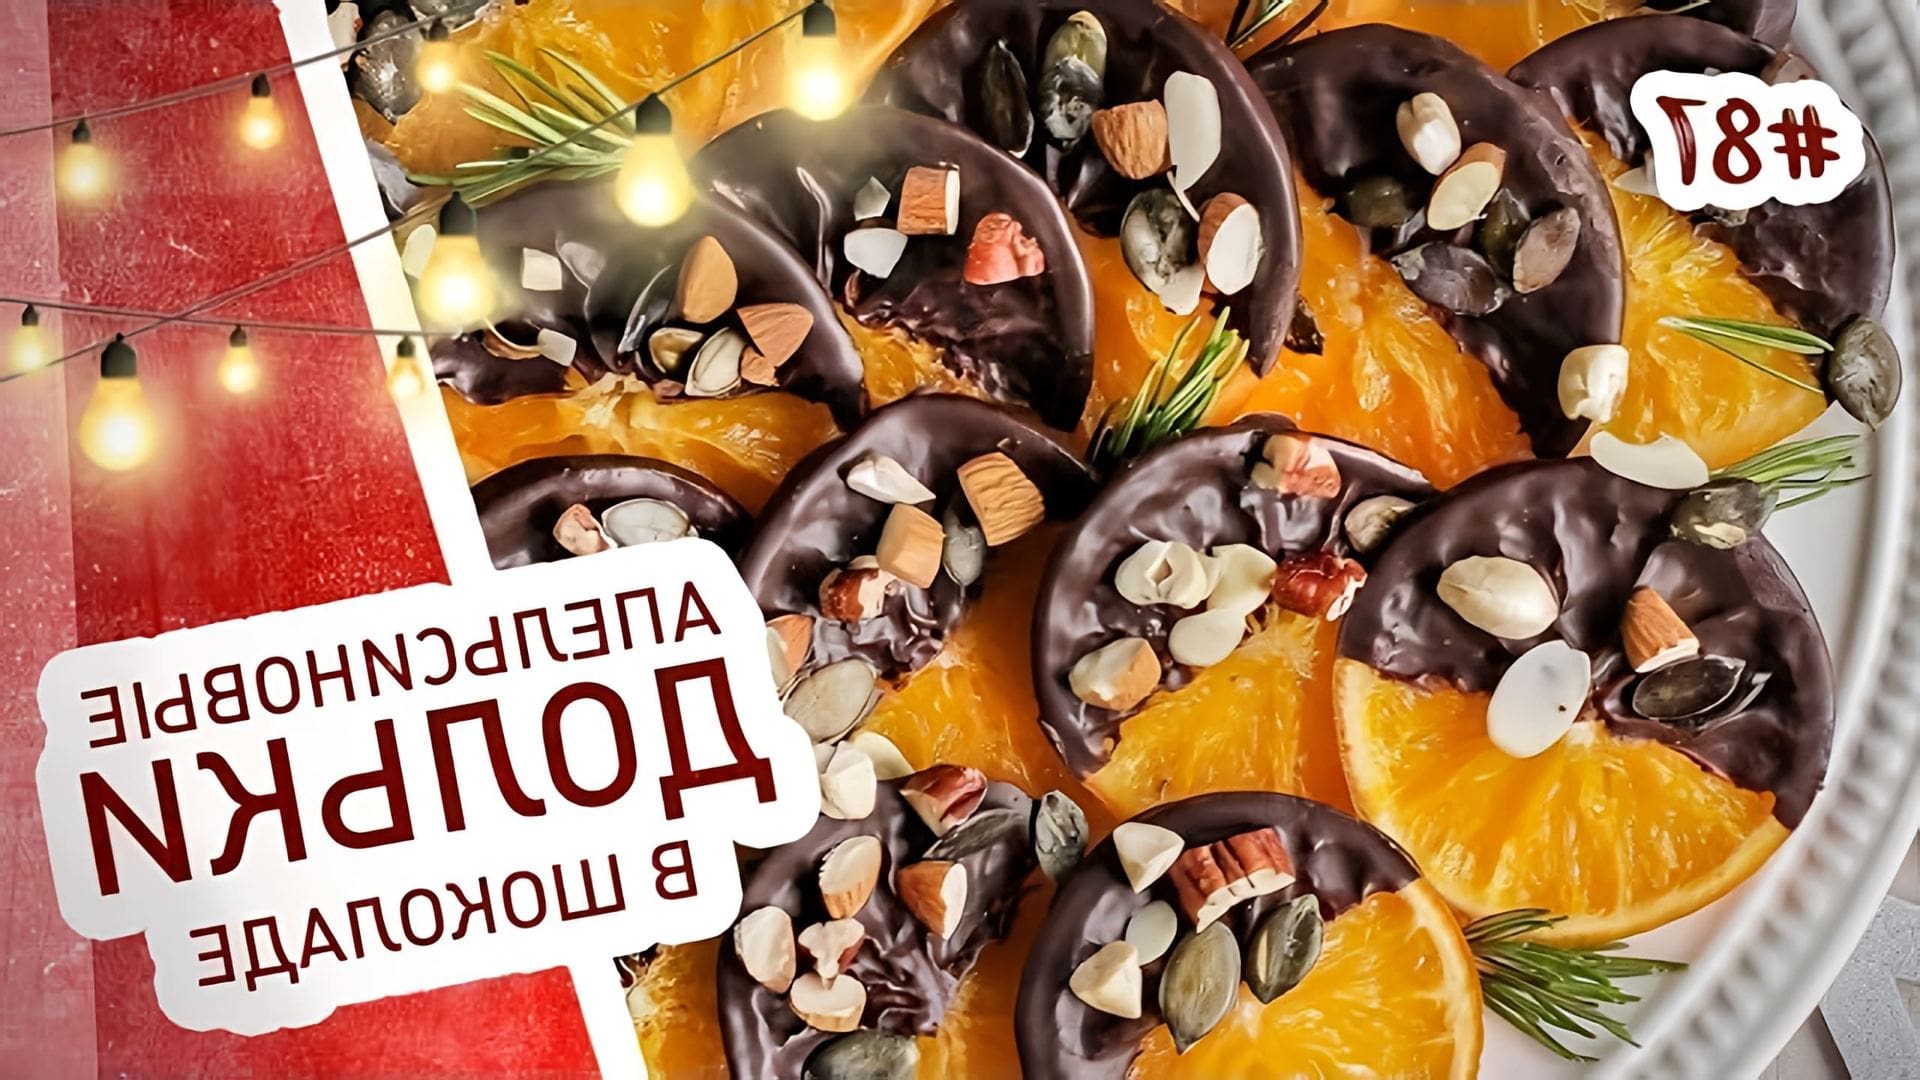 В этом видео демонстрируется рецепт приготовления апельсиновых долек в шоколаде